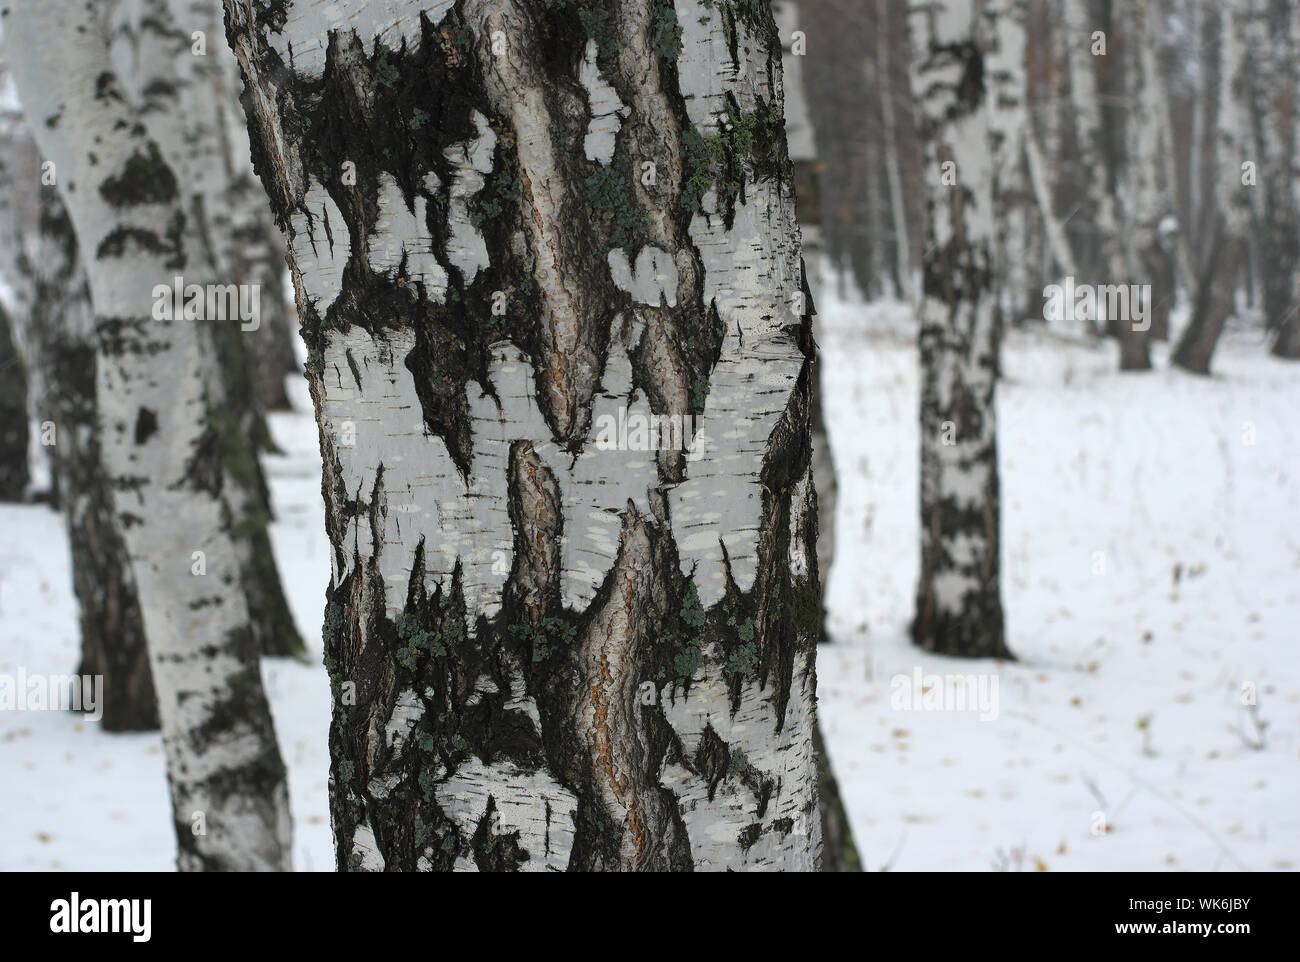 Di betulle in coperta di neve Forest Foto Stock